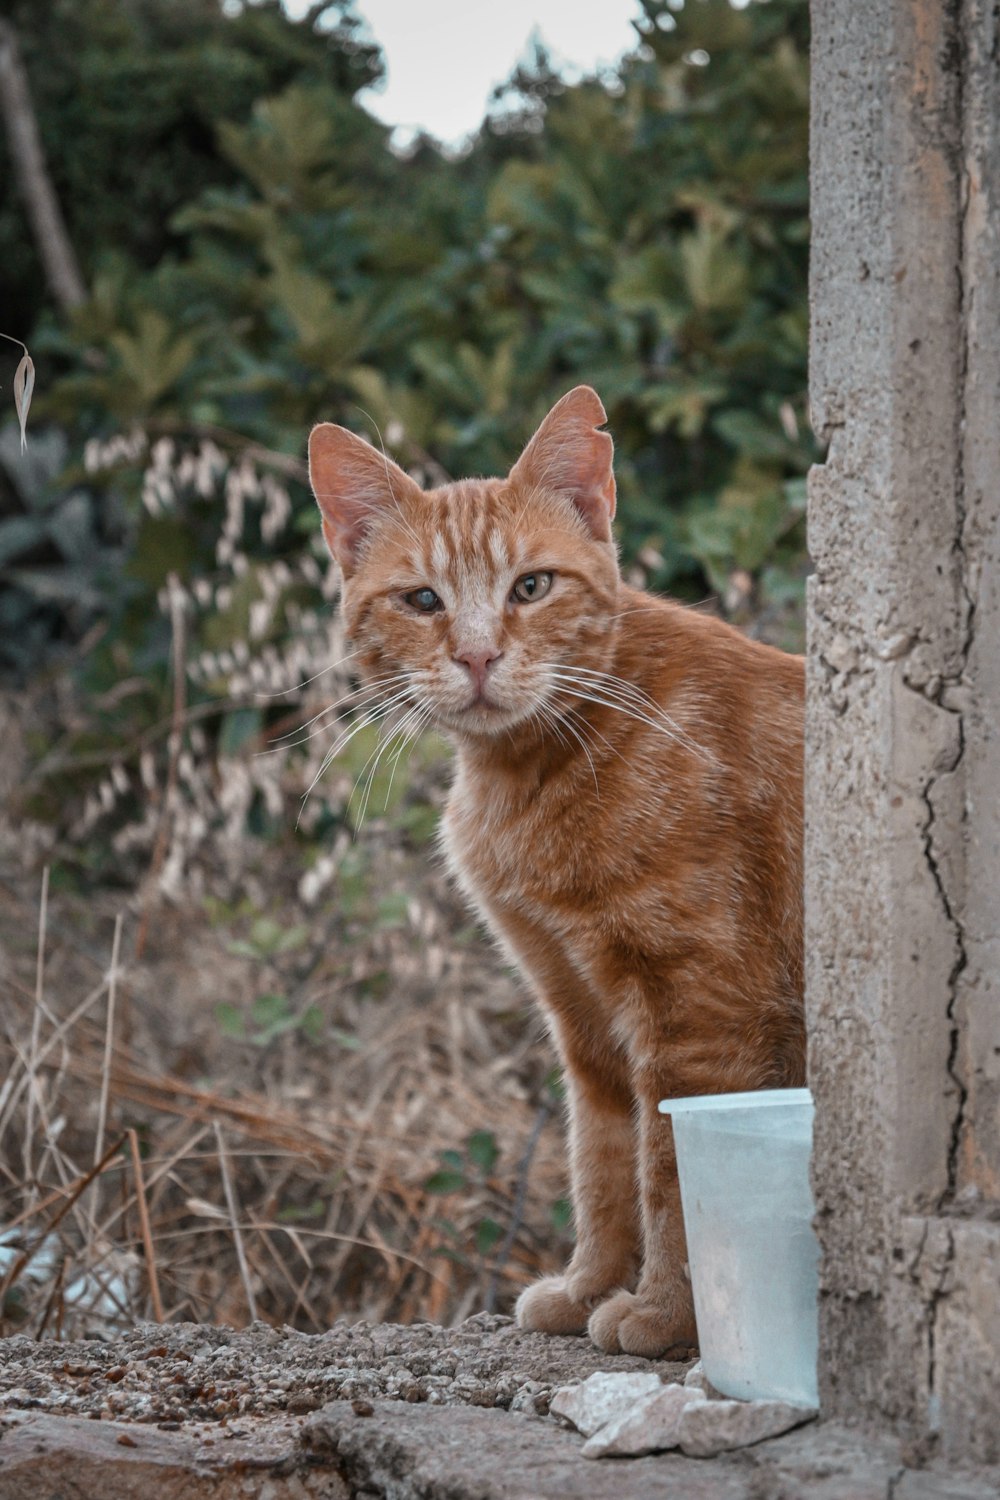 eine orangefarbene Katze, die neben einer Tasse steht